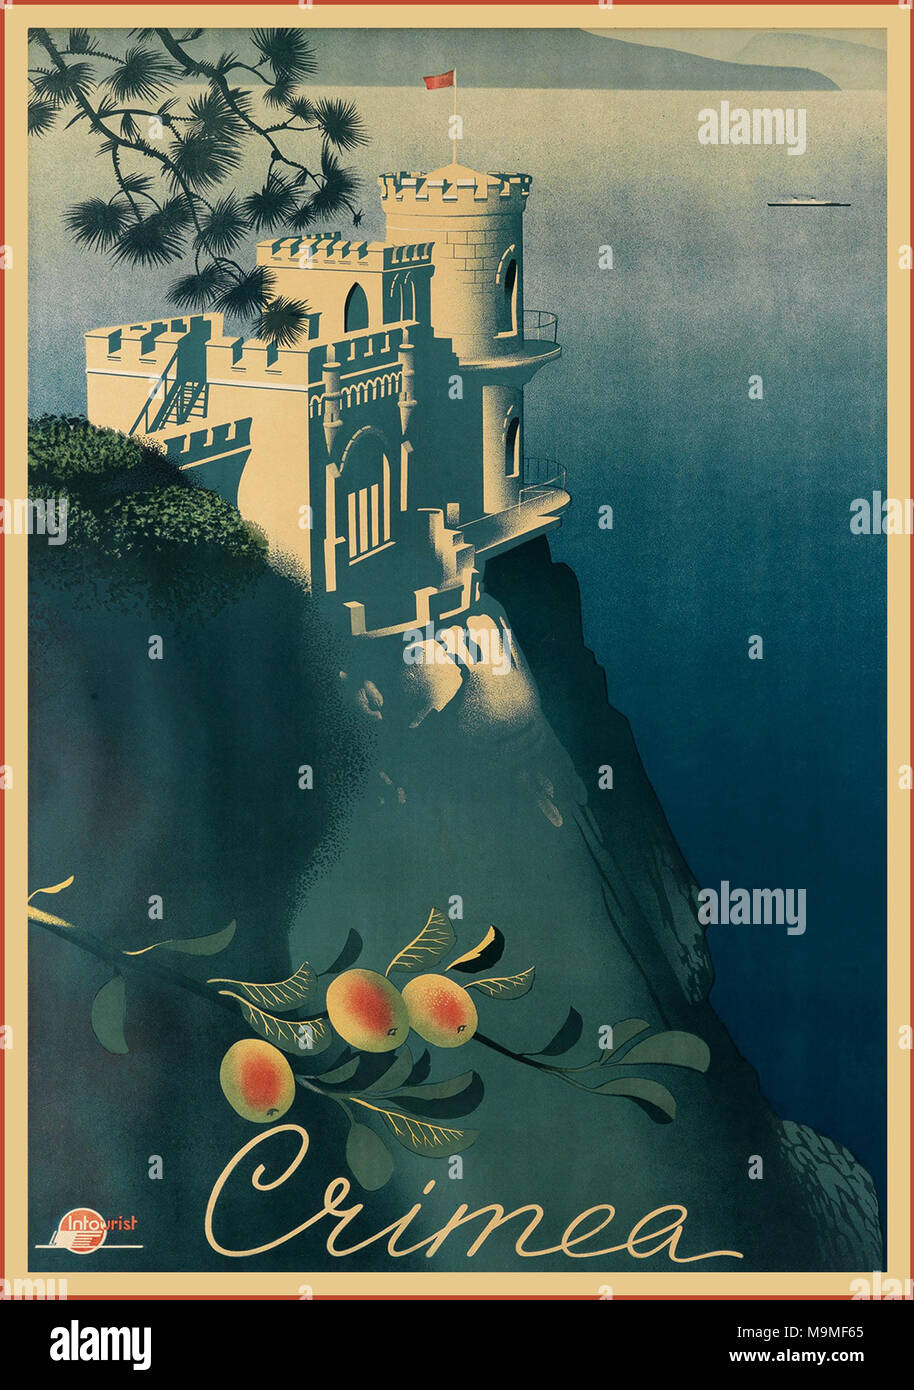 CRIMEA vintage degli anni trenta InTourist poster di viaggio per la Russia Sovietica Crimea (dato in Ucraina negli anni cinquanta) Foto Stock